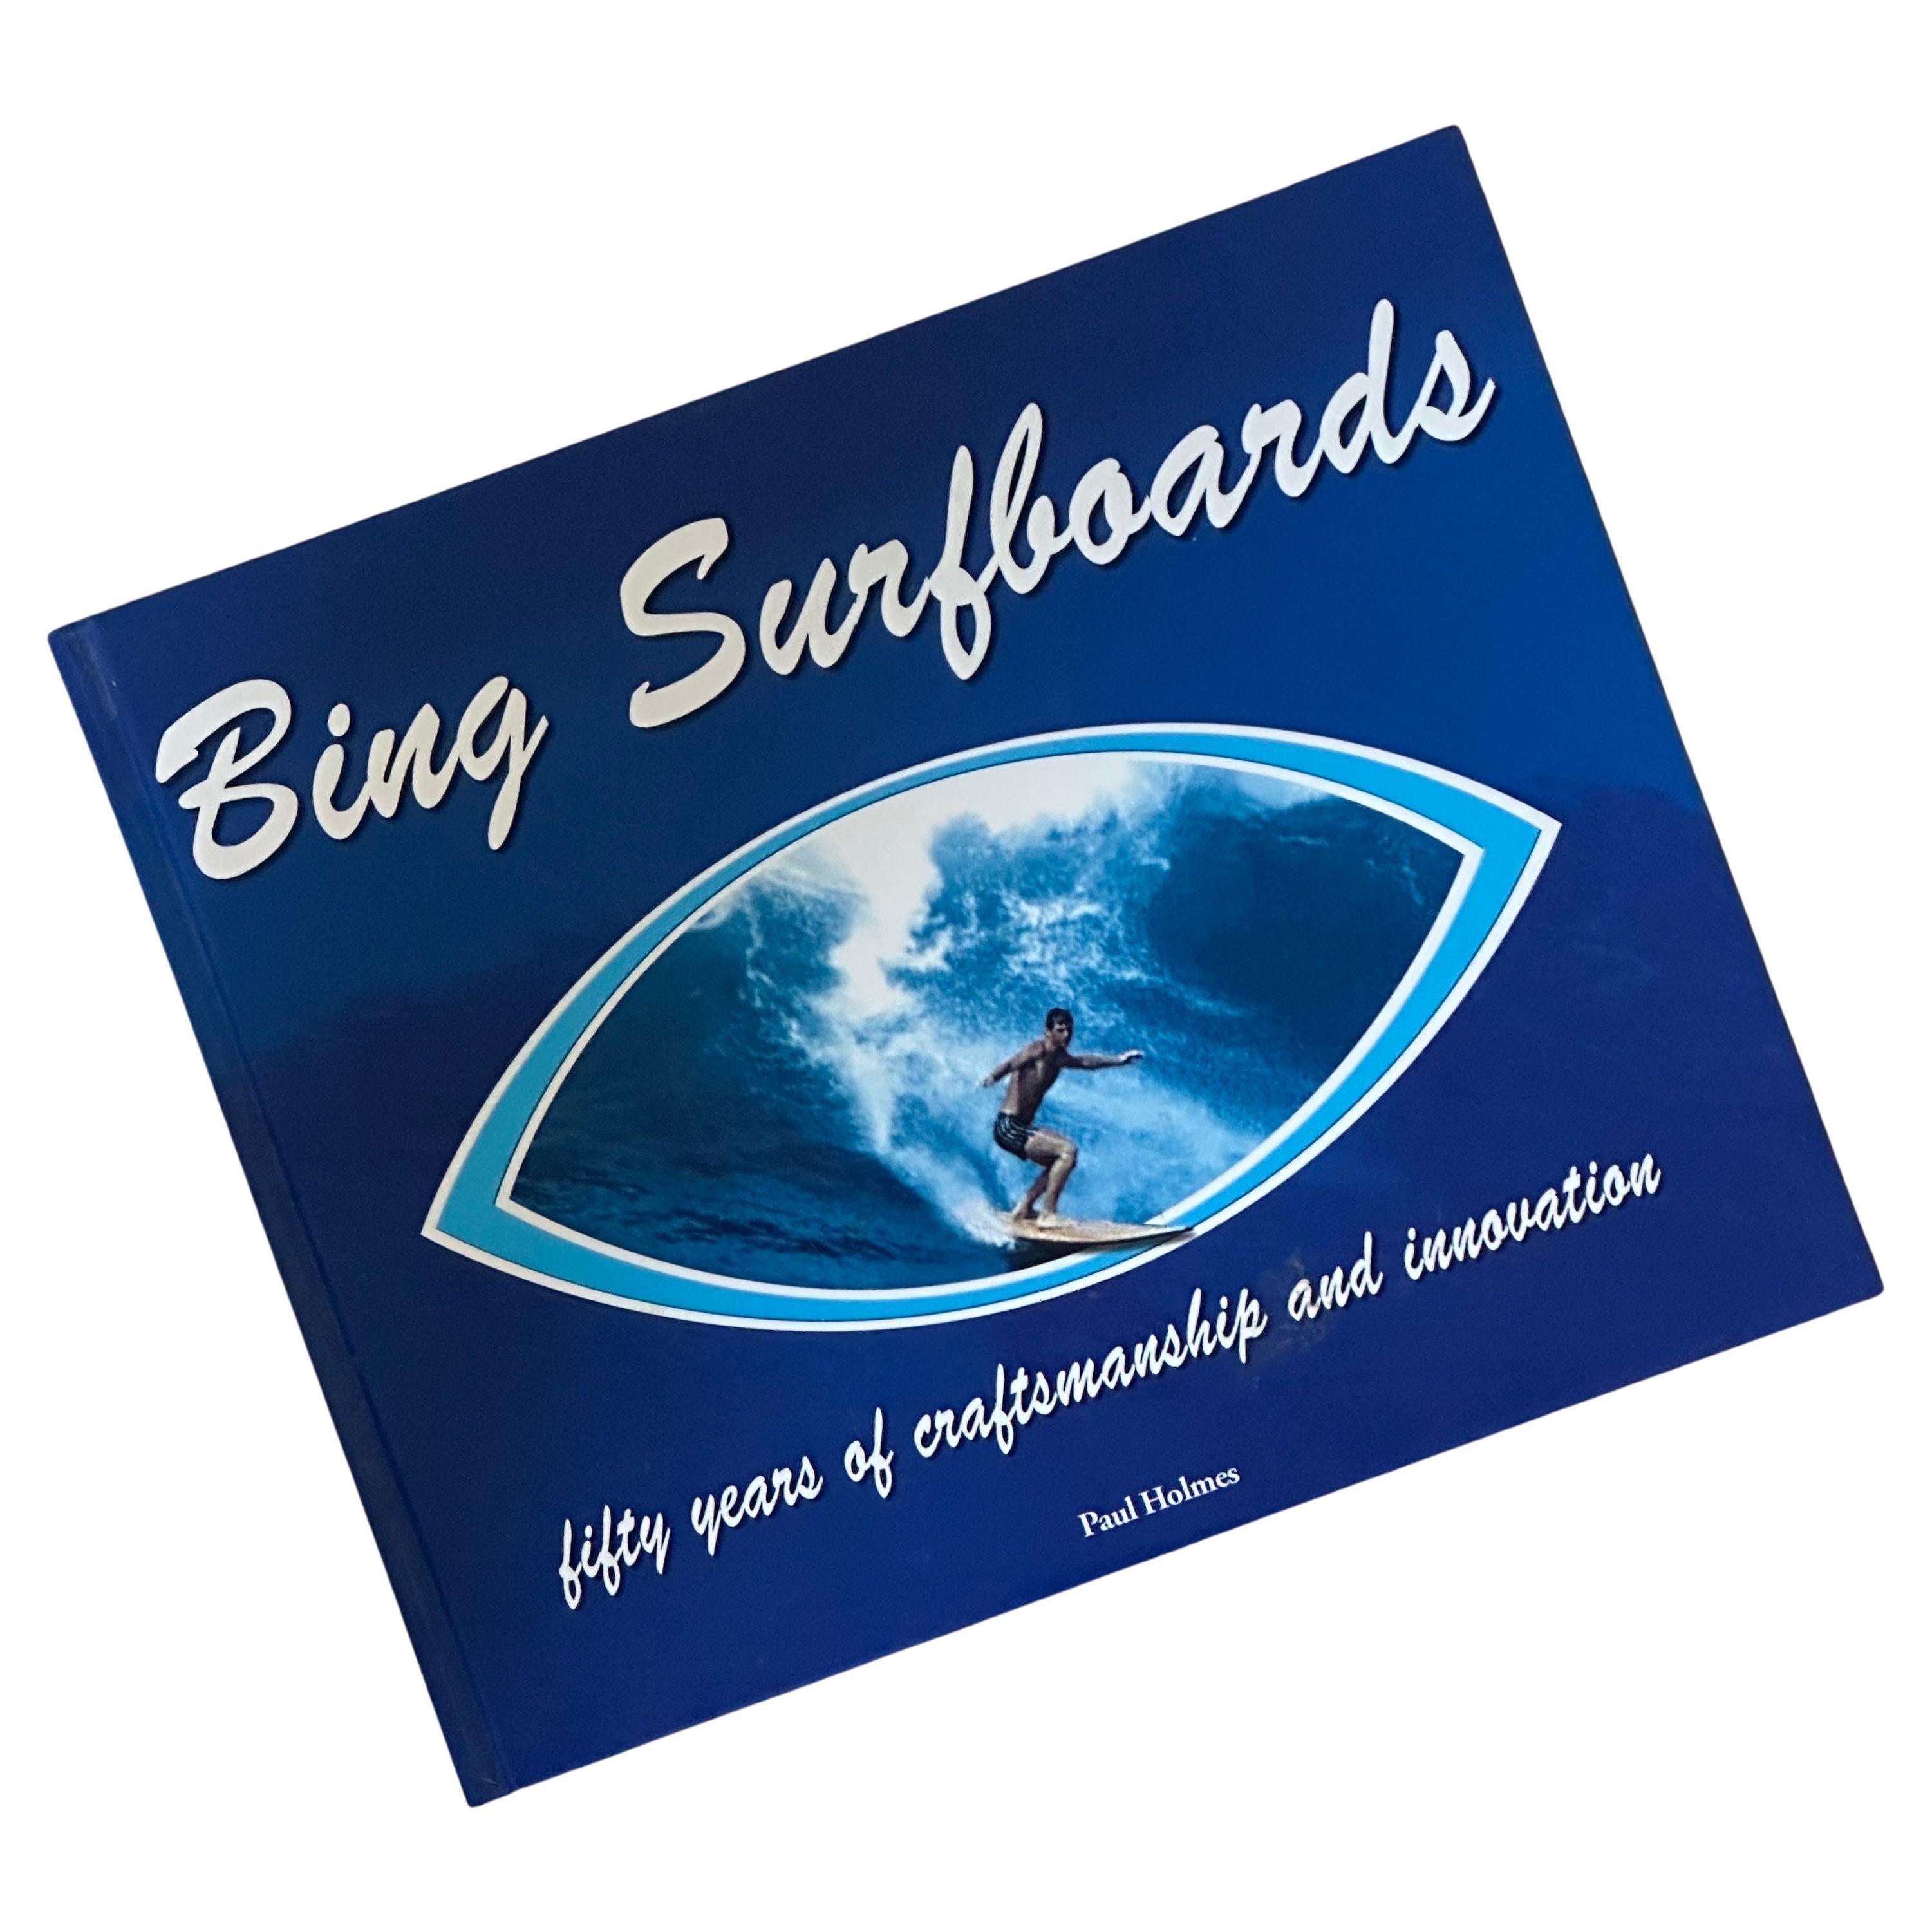 Livre "Bing Surfboards" signé par Paul Hoimes et signé par Bing Copeland - première édition